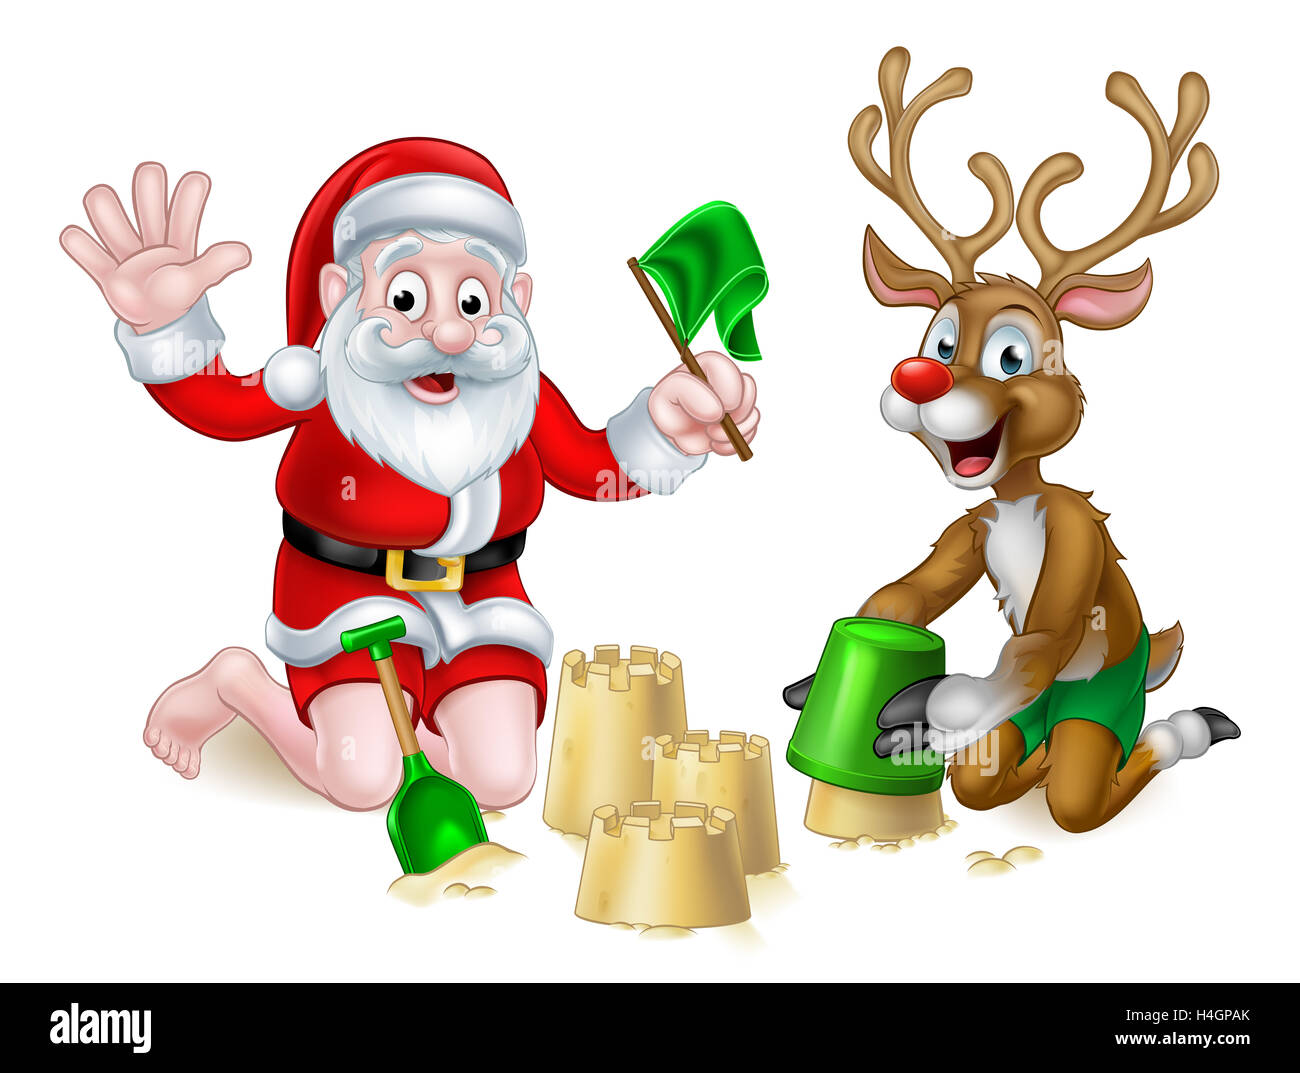 Weihnachten Weihnachtsmann Und Rote Nase Rentier Comic Figuren Spielen Am Strand Sandburgen Machen Stockfotografie Alamy